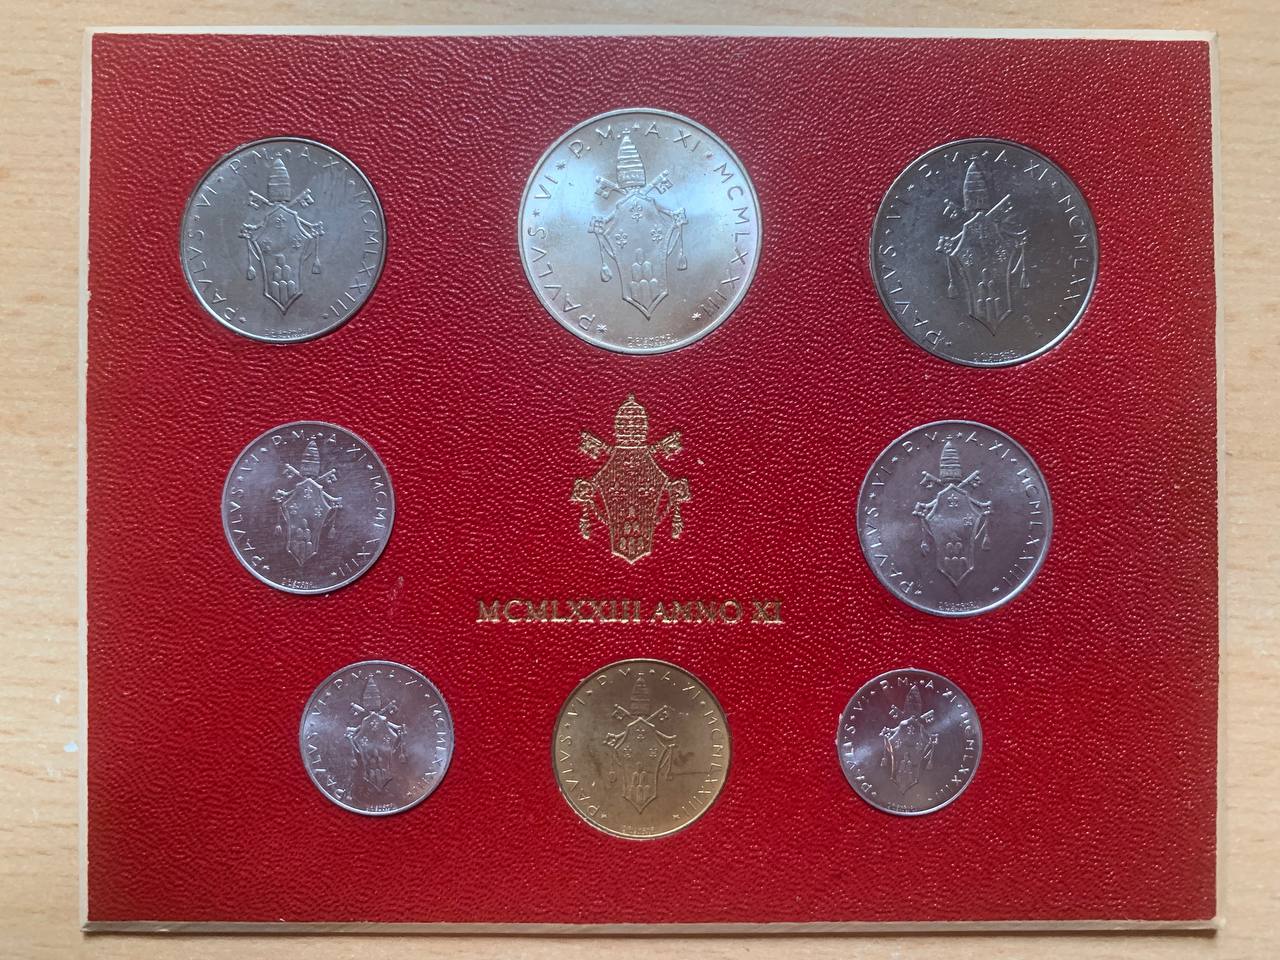  Jahresset von Vatikan 1973 BU (8 Münzen)   